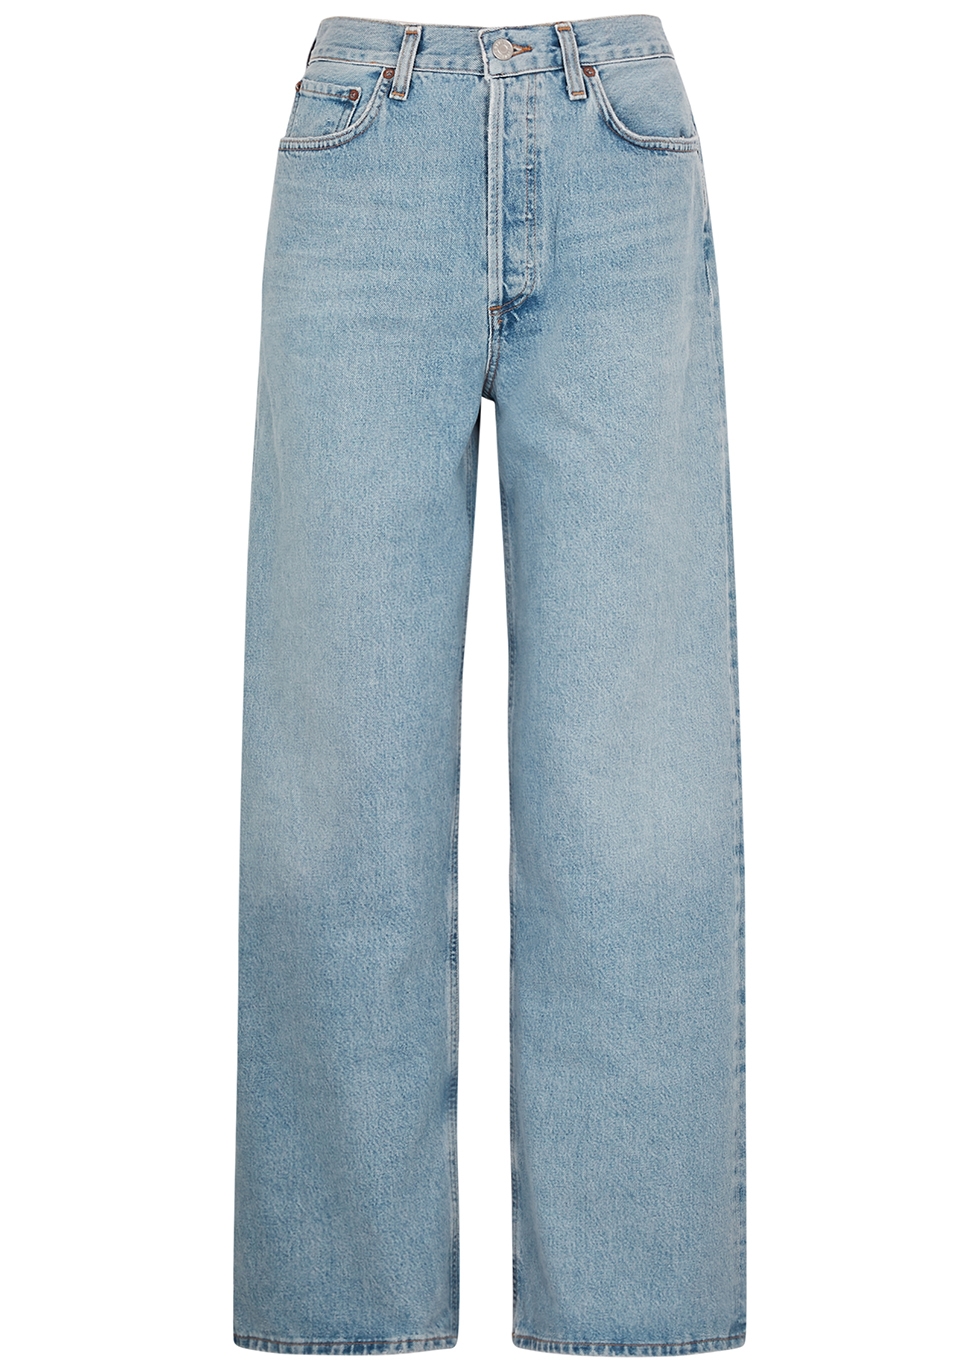 AGOLDE Low Slung Baggy blue wide-leg jeans - Harvey Nichols